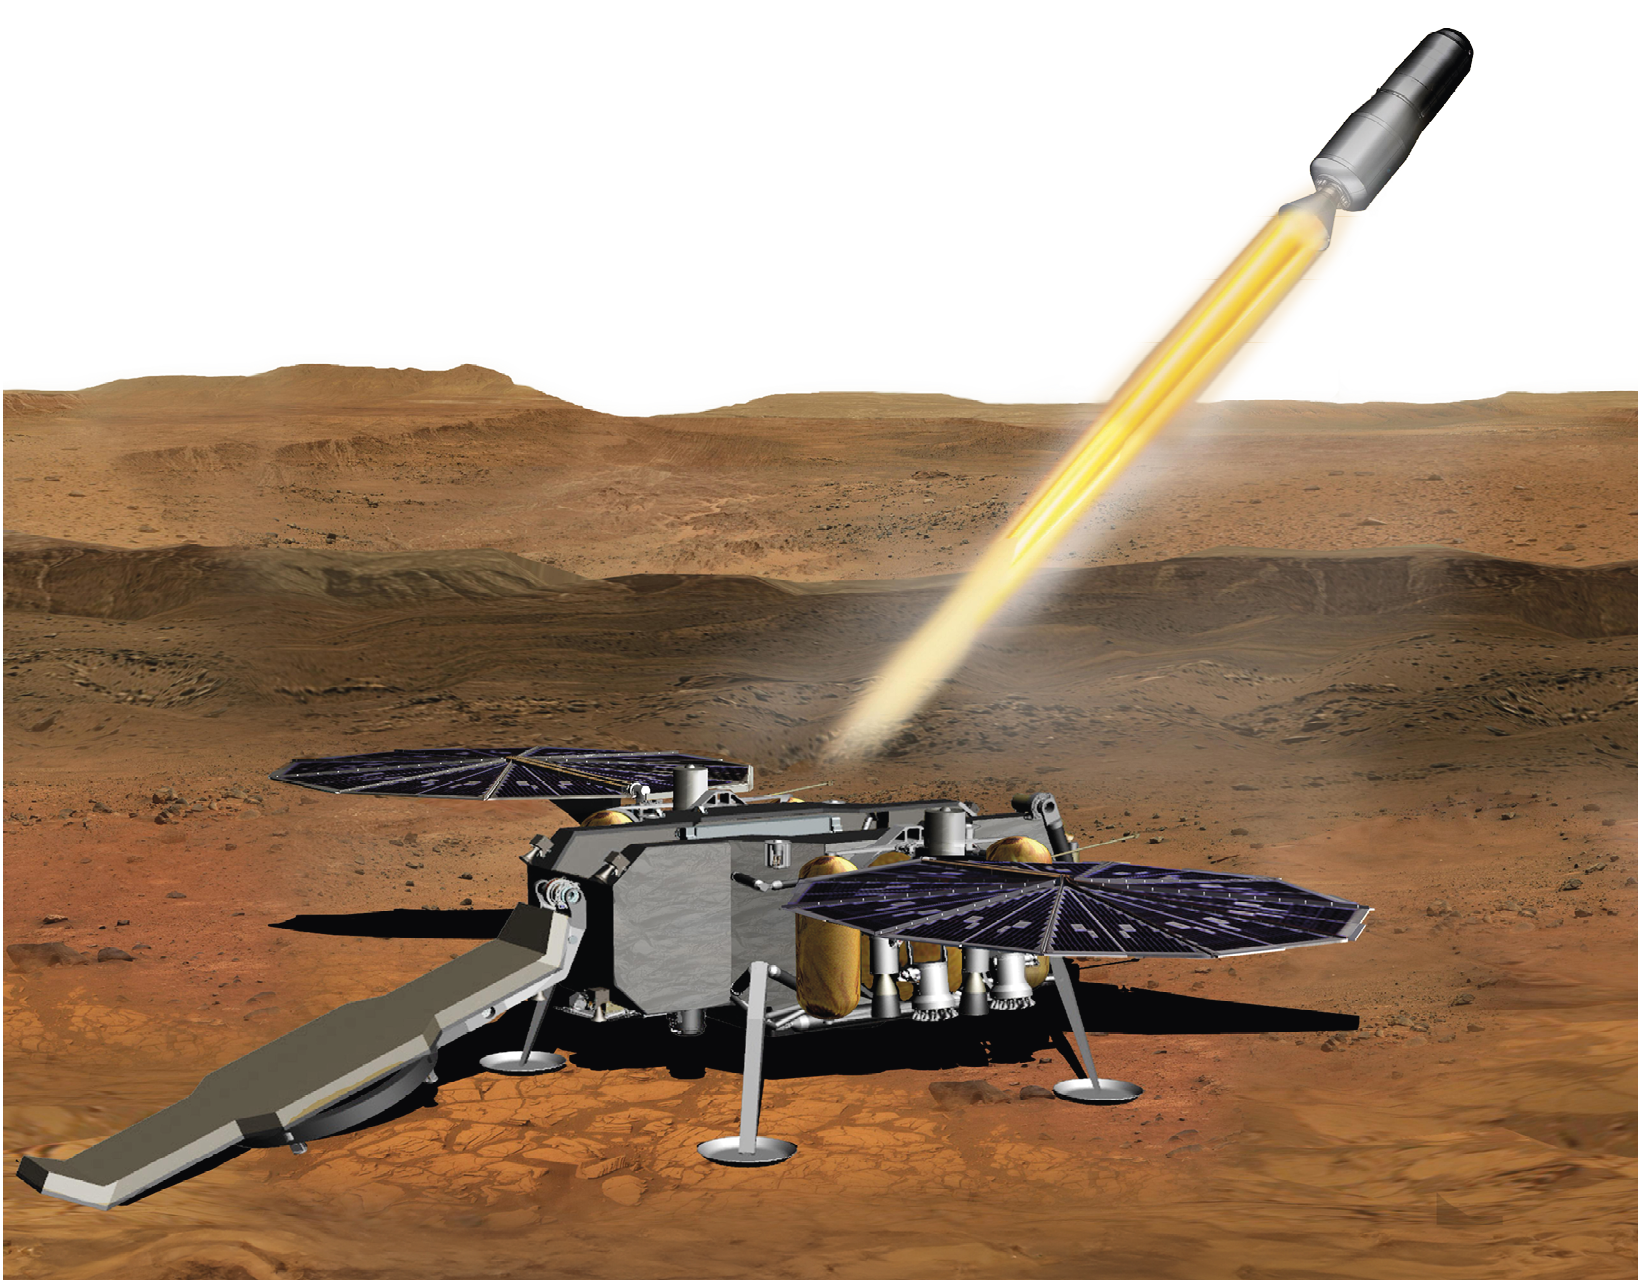 Darstellung des Mars Ascent Vehicles